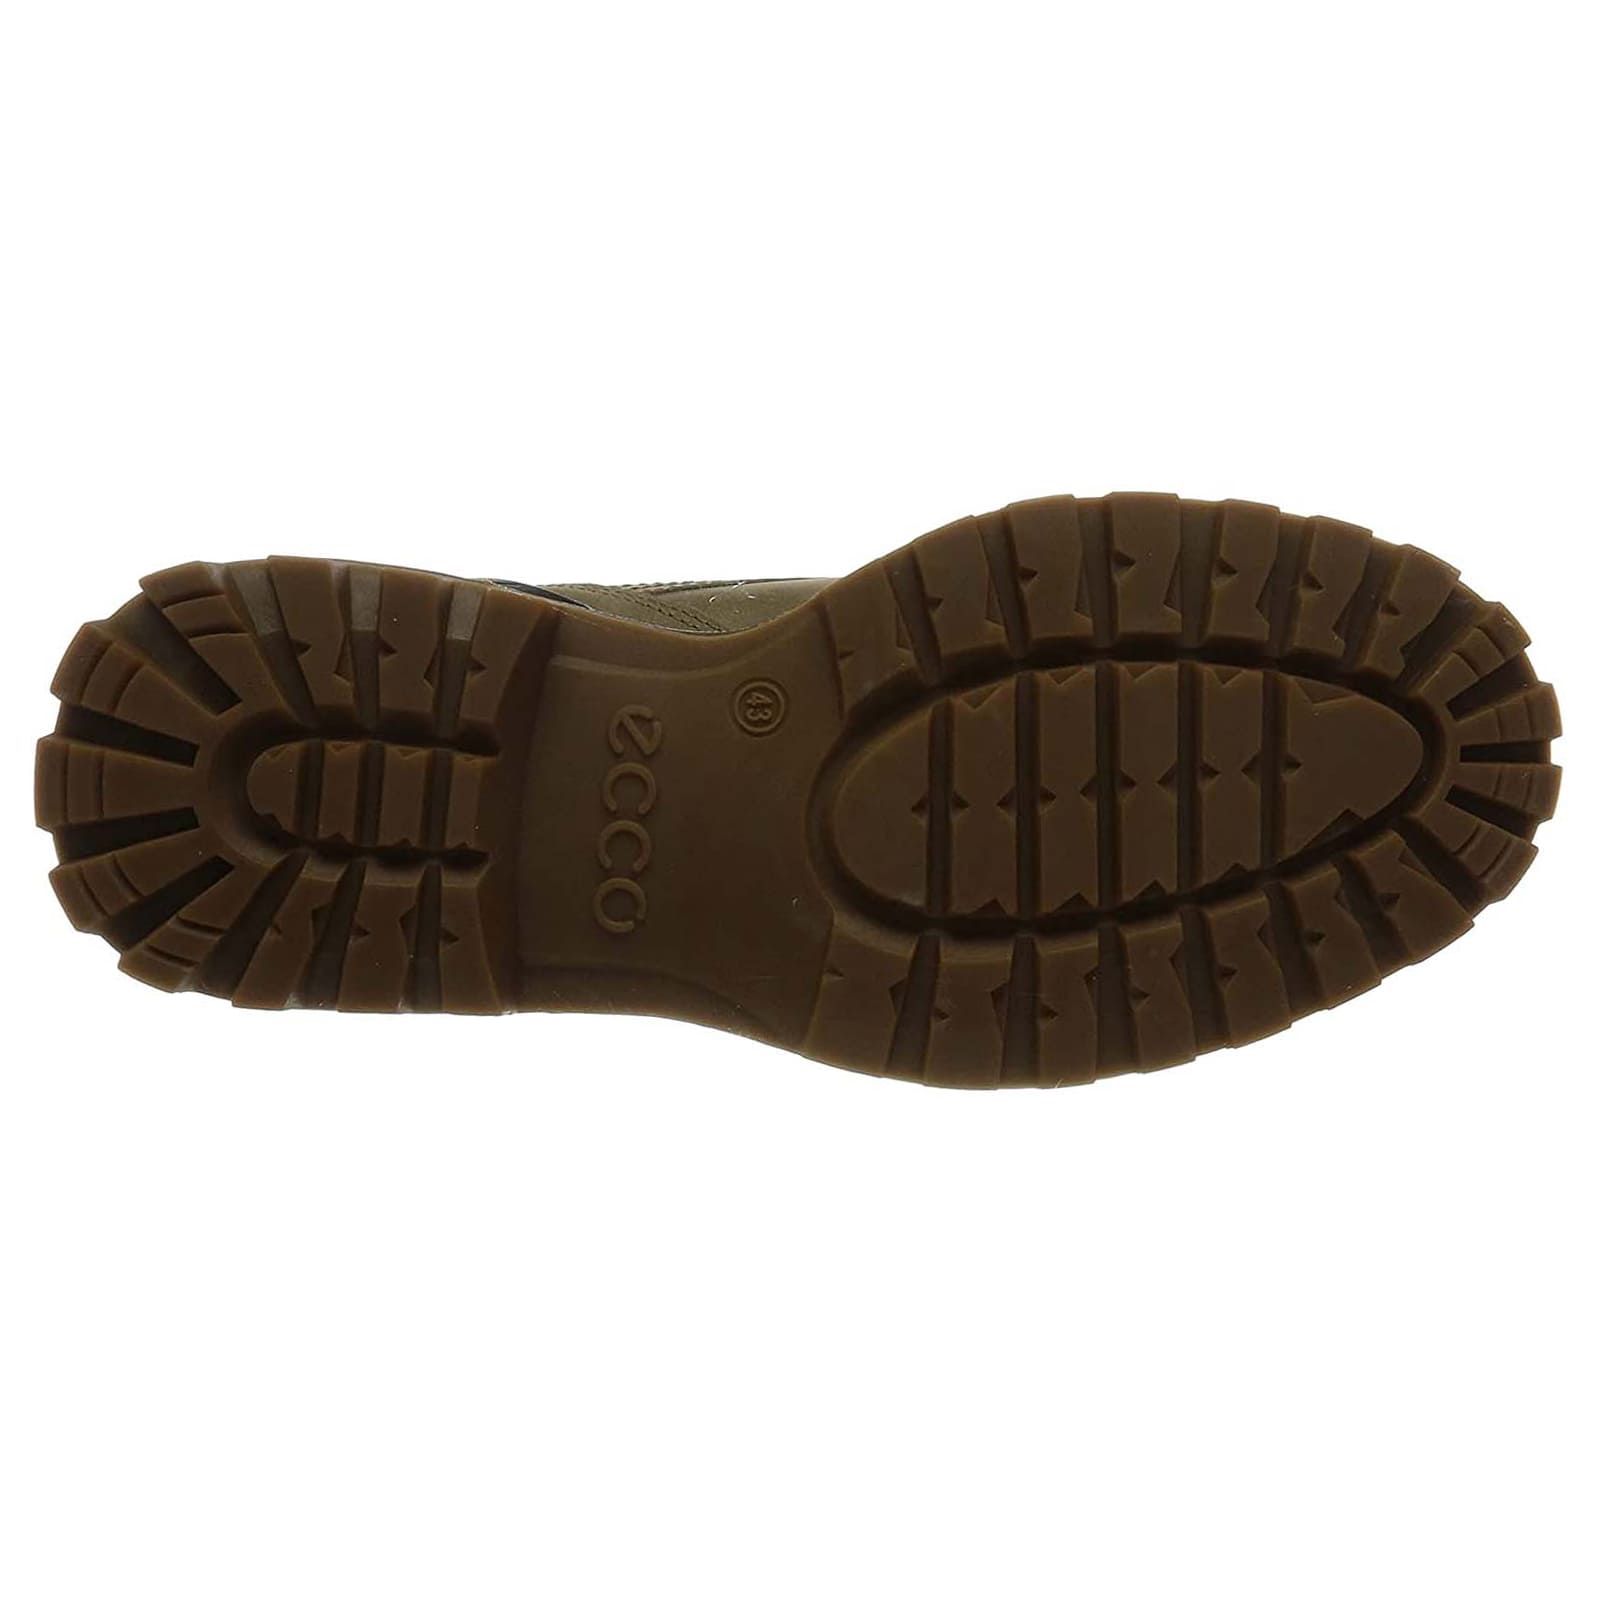 Ecco Tredtray 460474 Nubuck Mens Boots#color_navajo brown